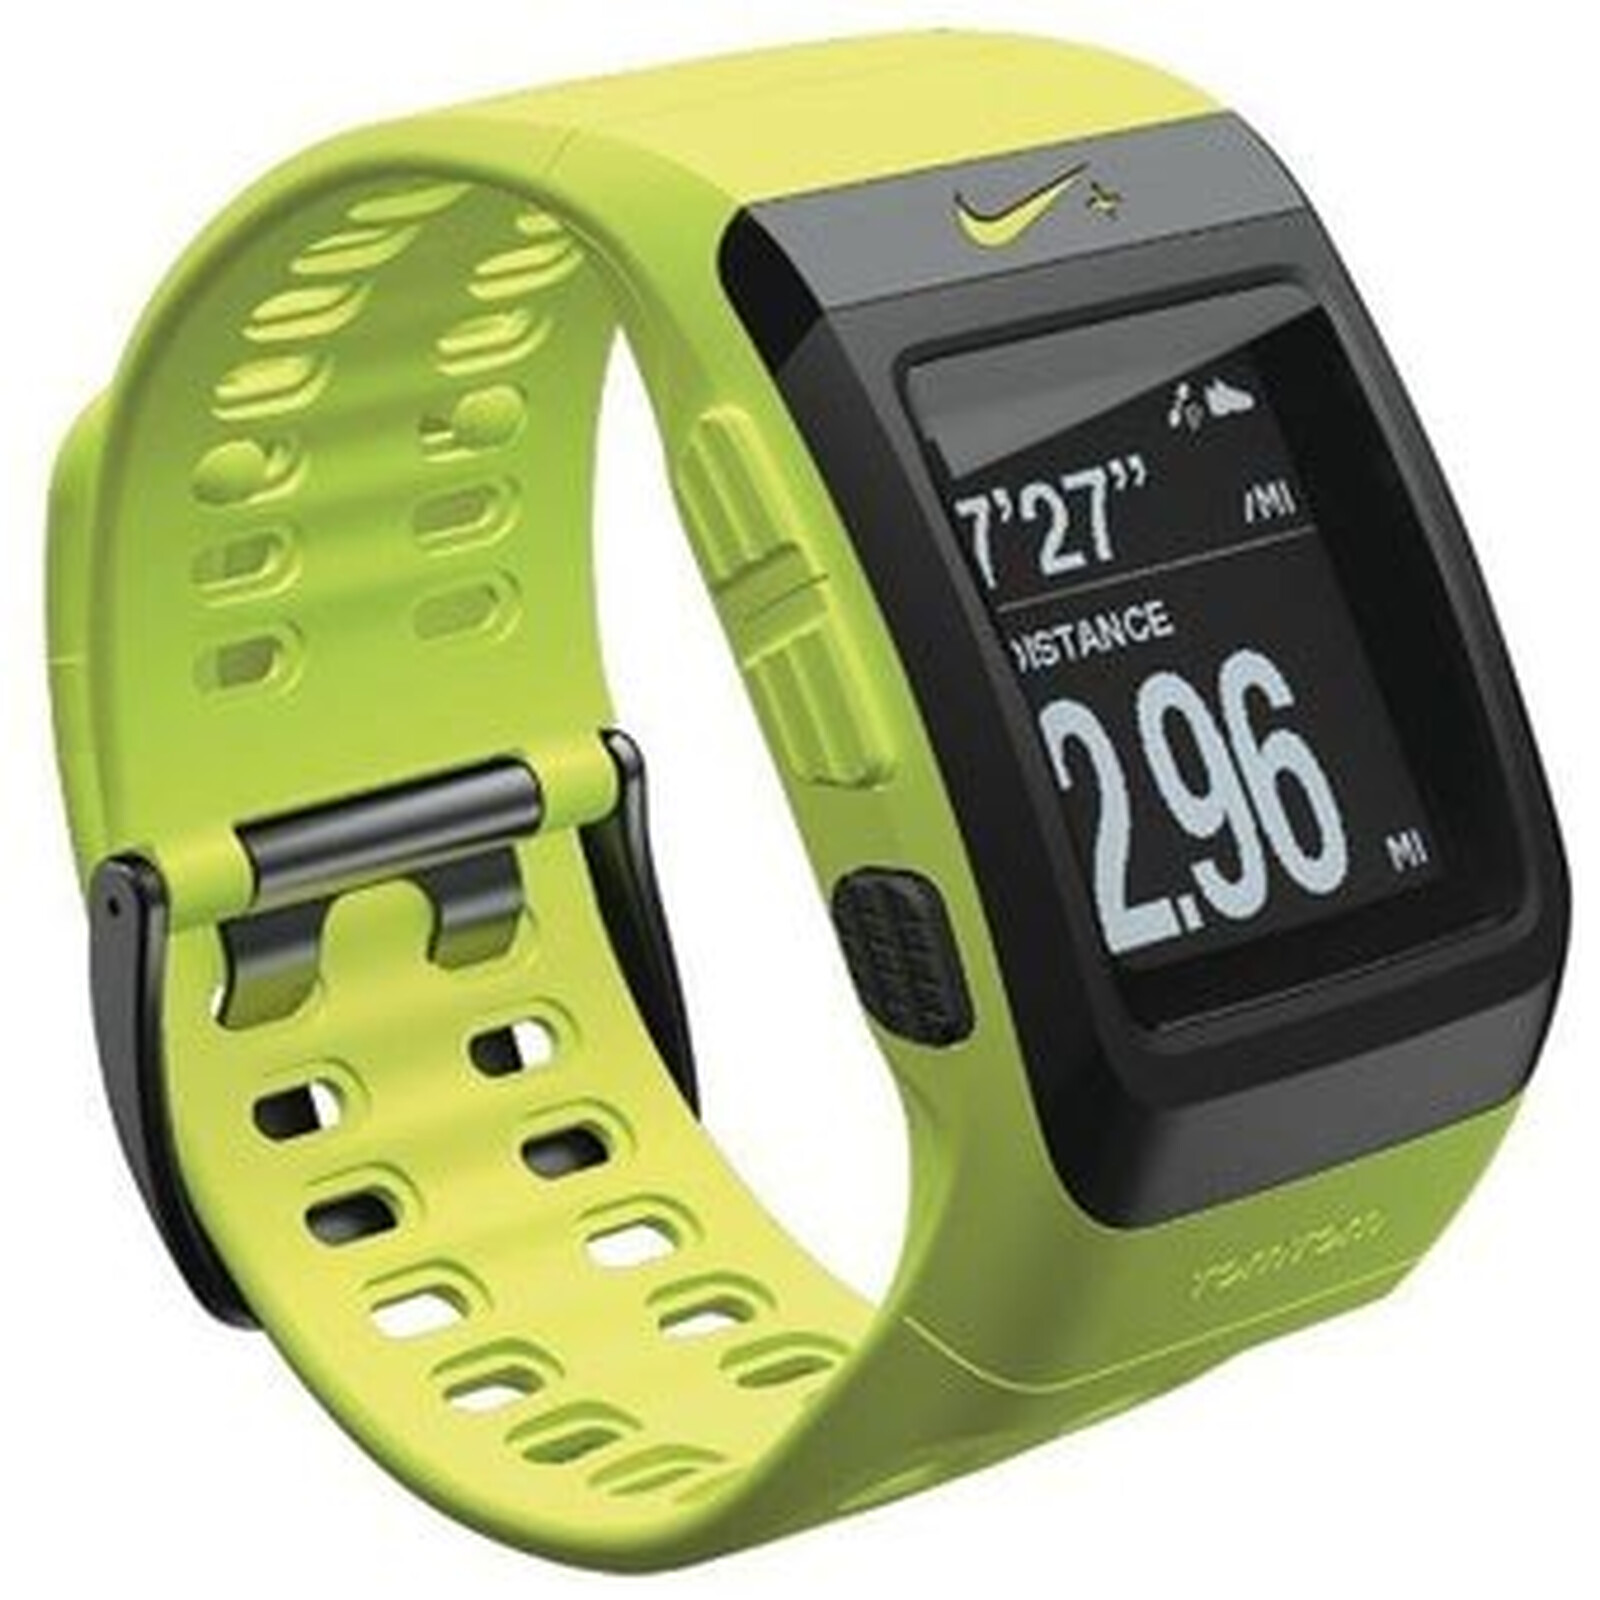 Купить часы шагомер с измерением. Часы Nike sportwatch GPS. Часы Nike TOMTOM USB. Электронные наручные часы с шагомером t9025. Nike+ sportwatch GPS TOMTOM аккумулятор.